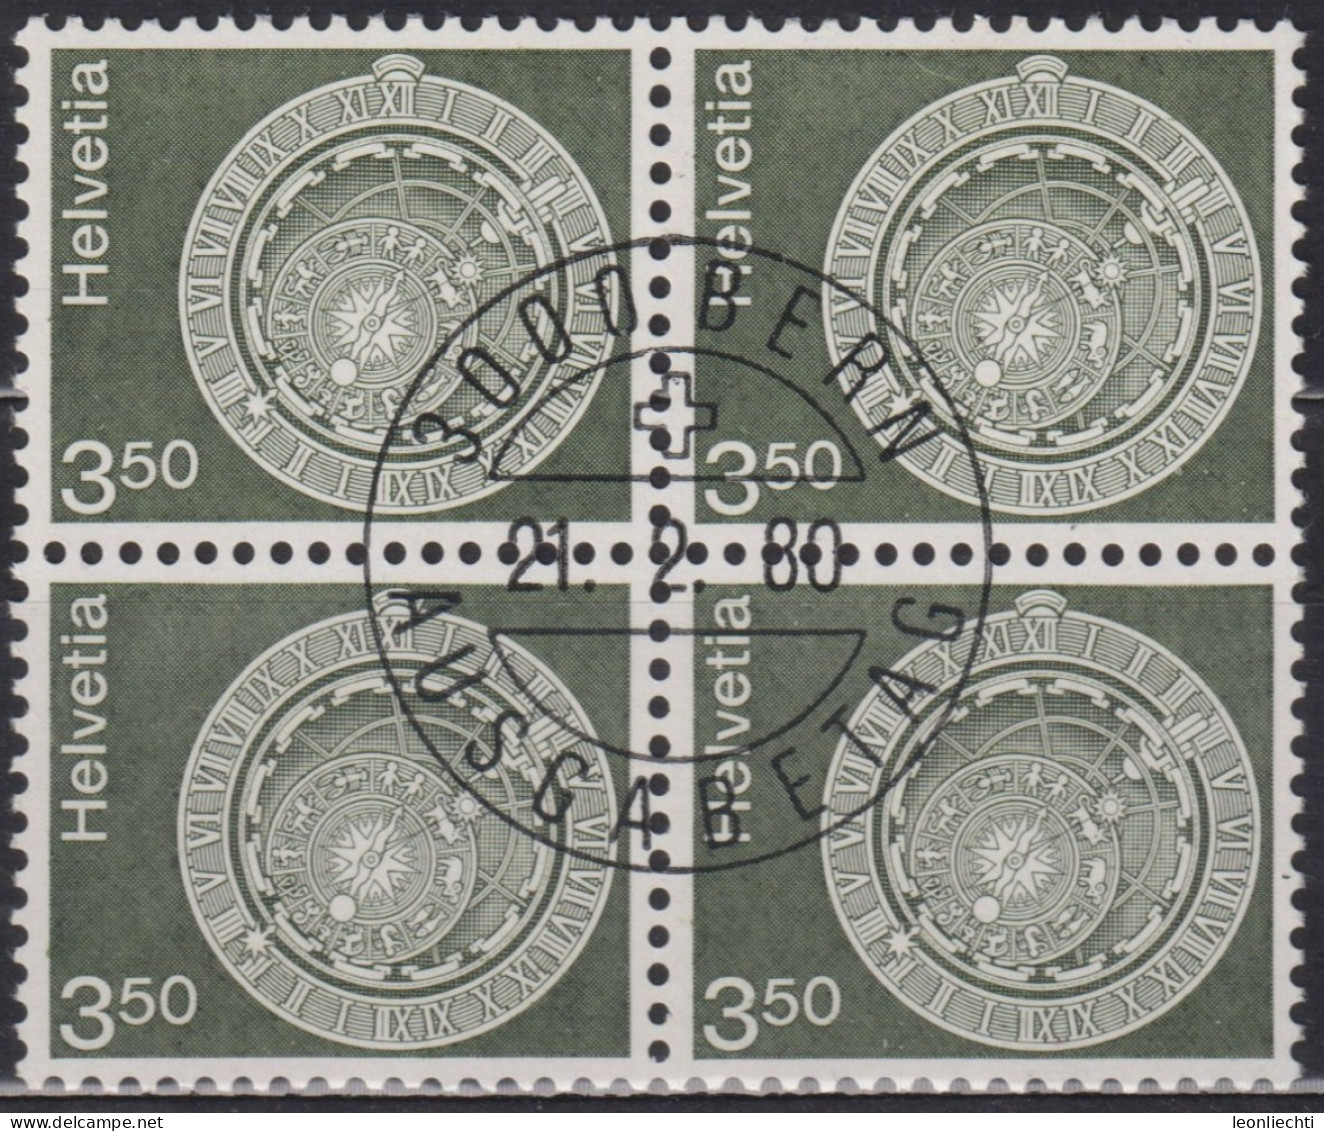 1980 Schweiz ET ° Zum: CH 613, MI: CH 1169, Astronomische Uhr, Bern, - Uhrmacherei